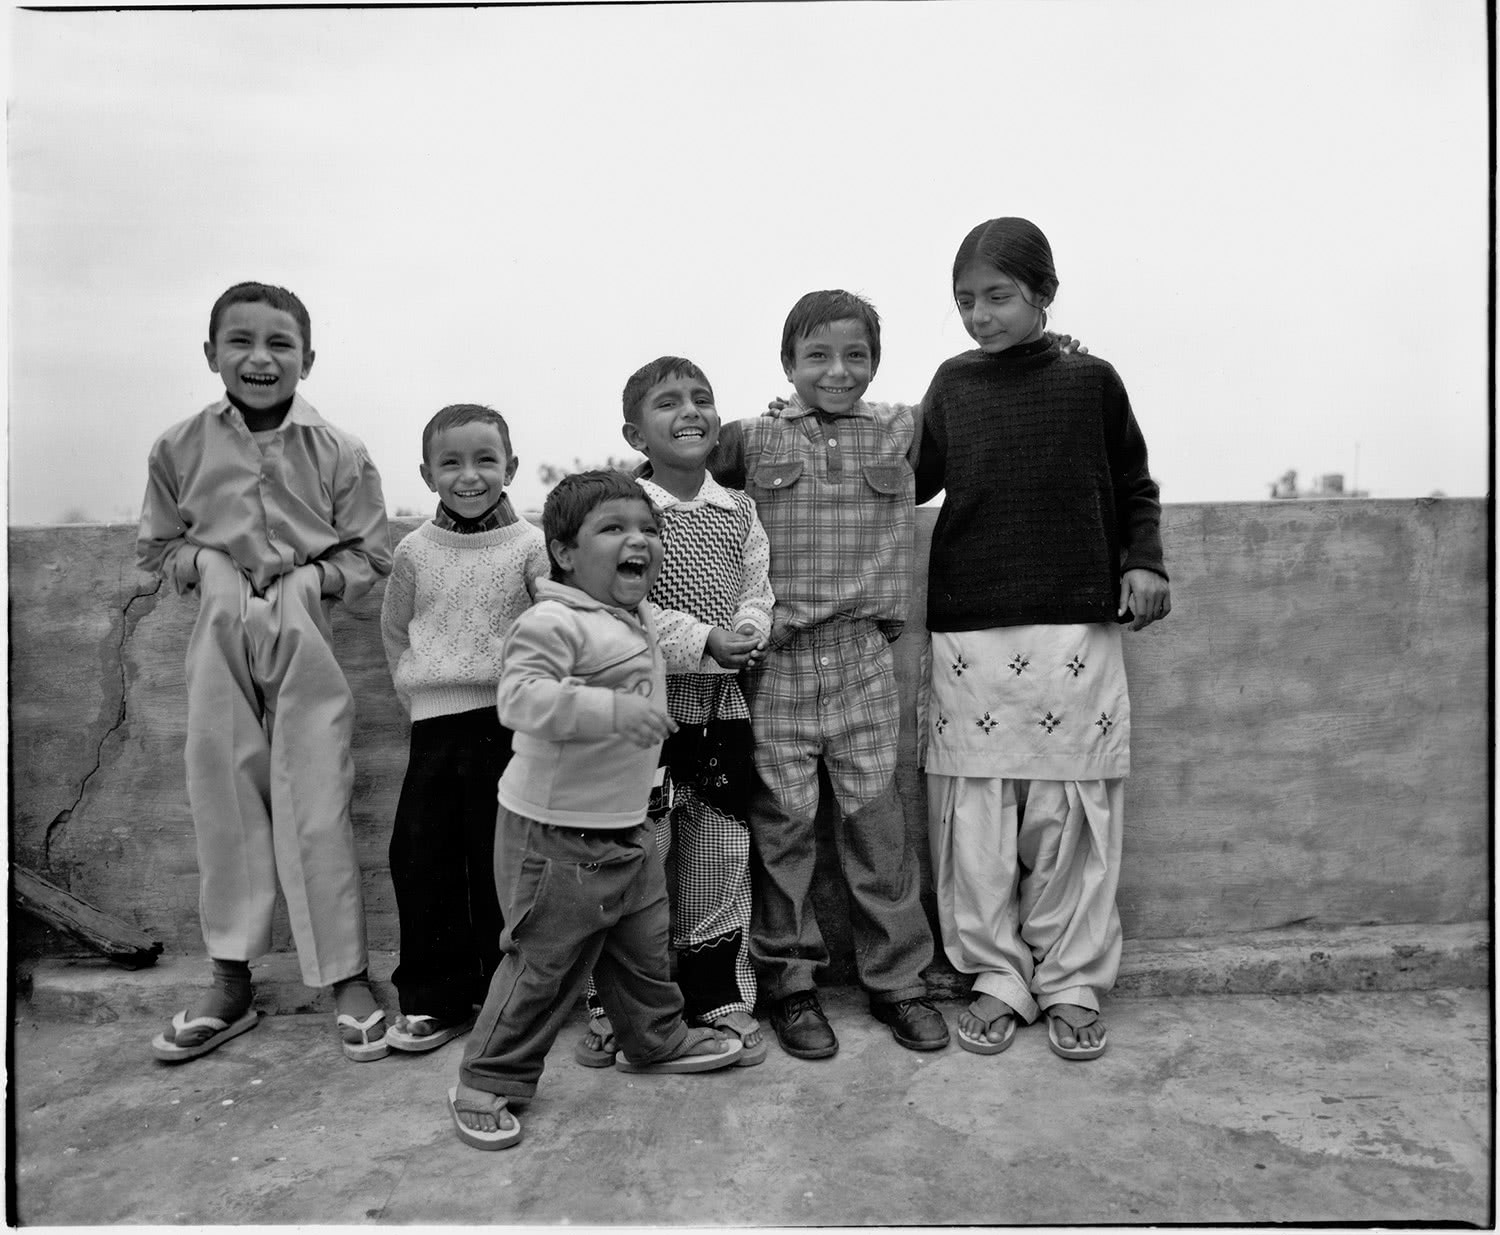 B&W Village childen laughing in Punjab